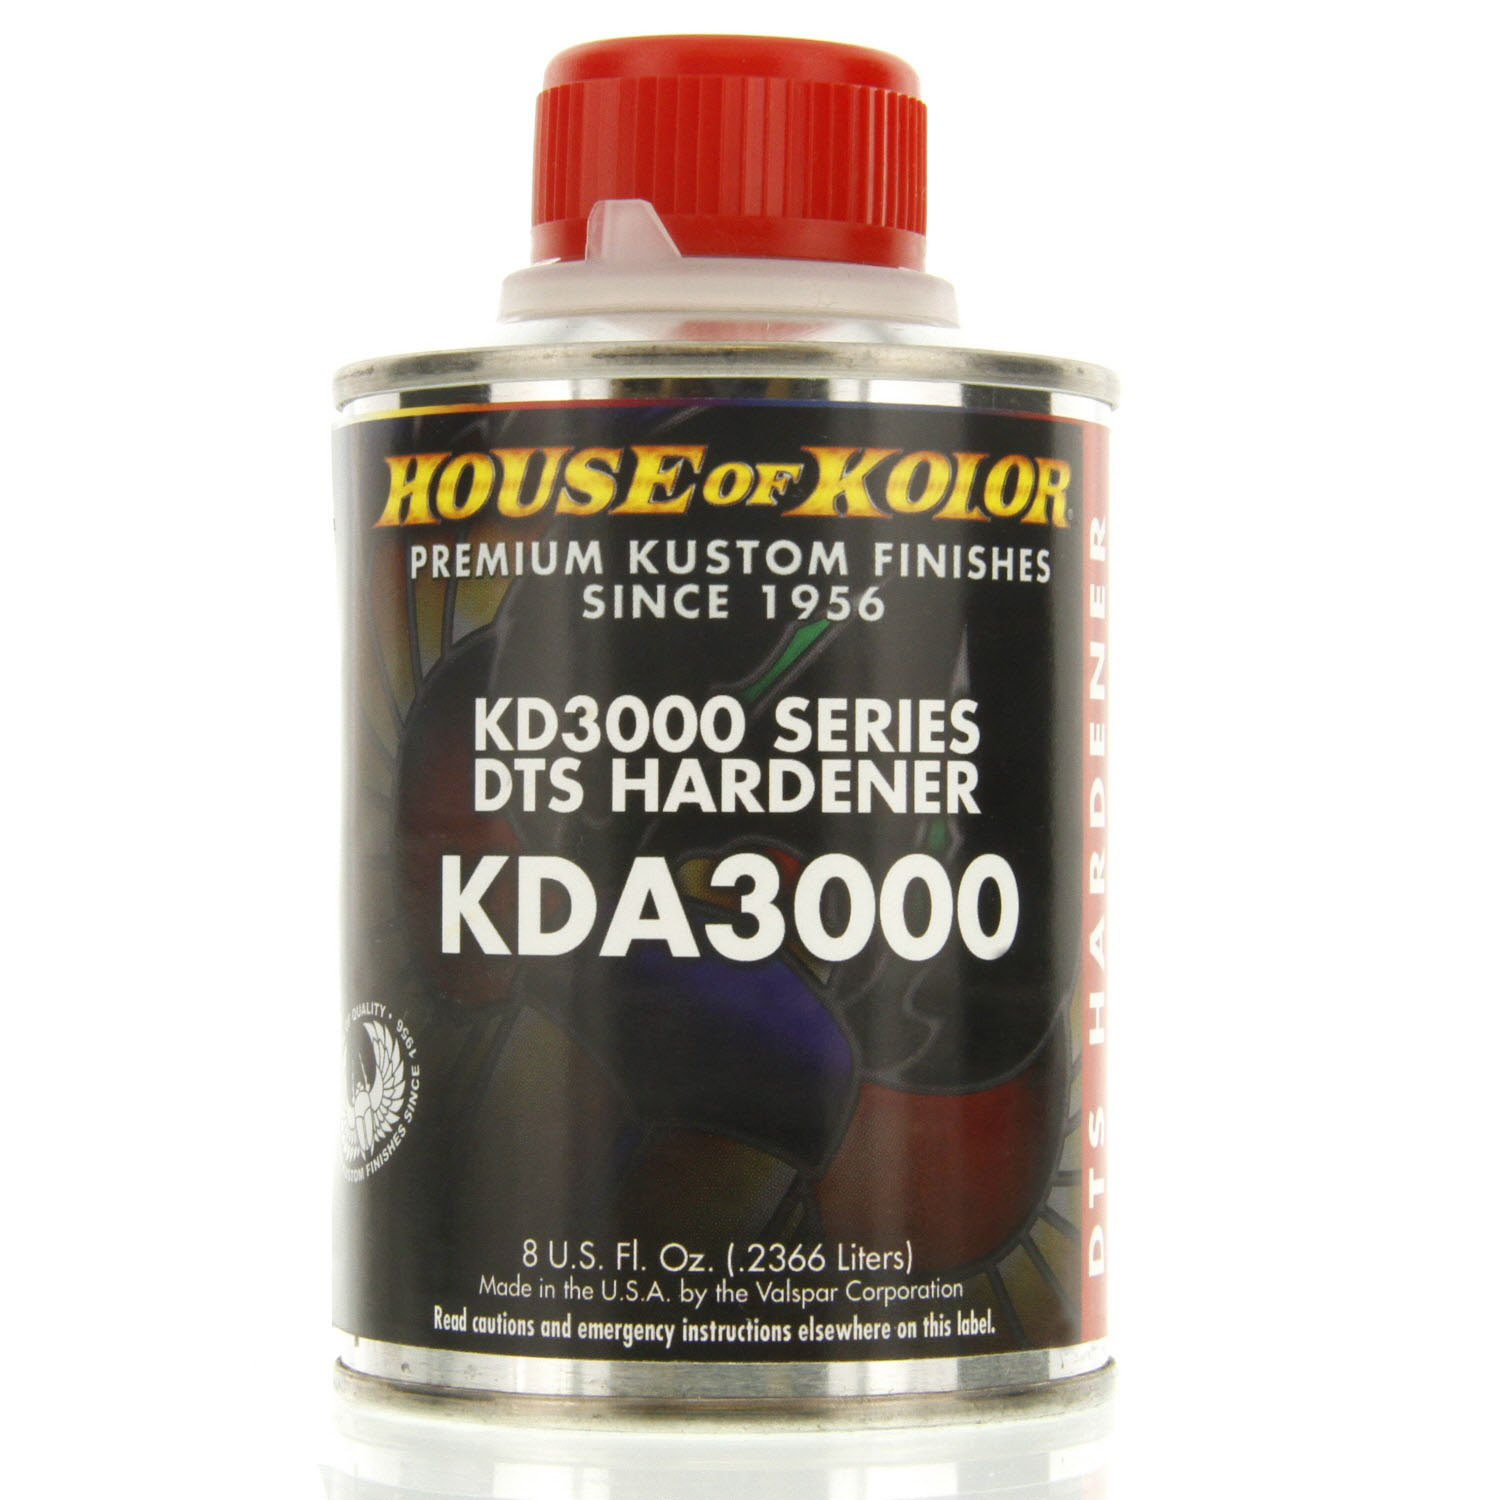 KDA3000 DTS Hardener Half Pint